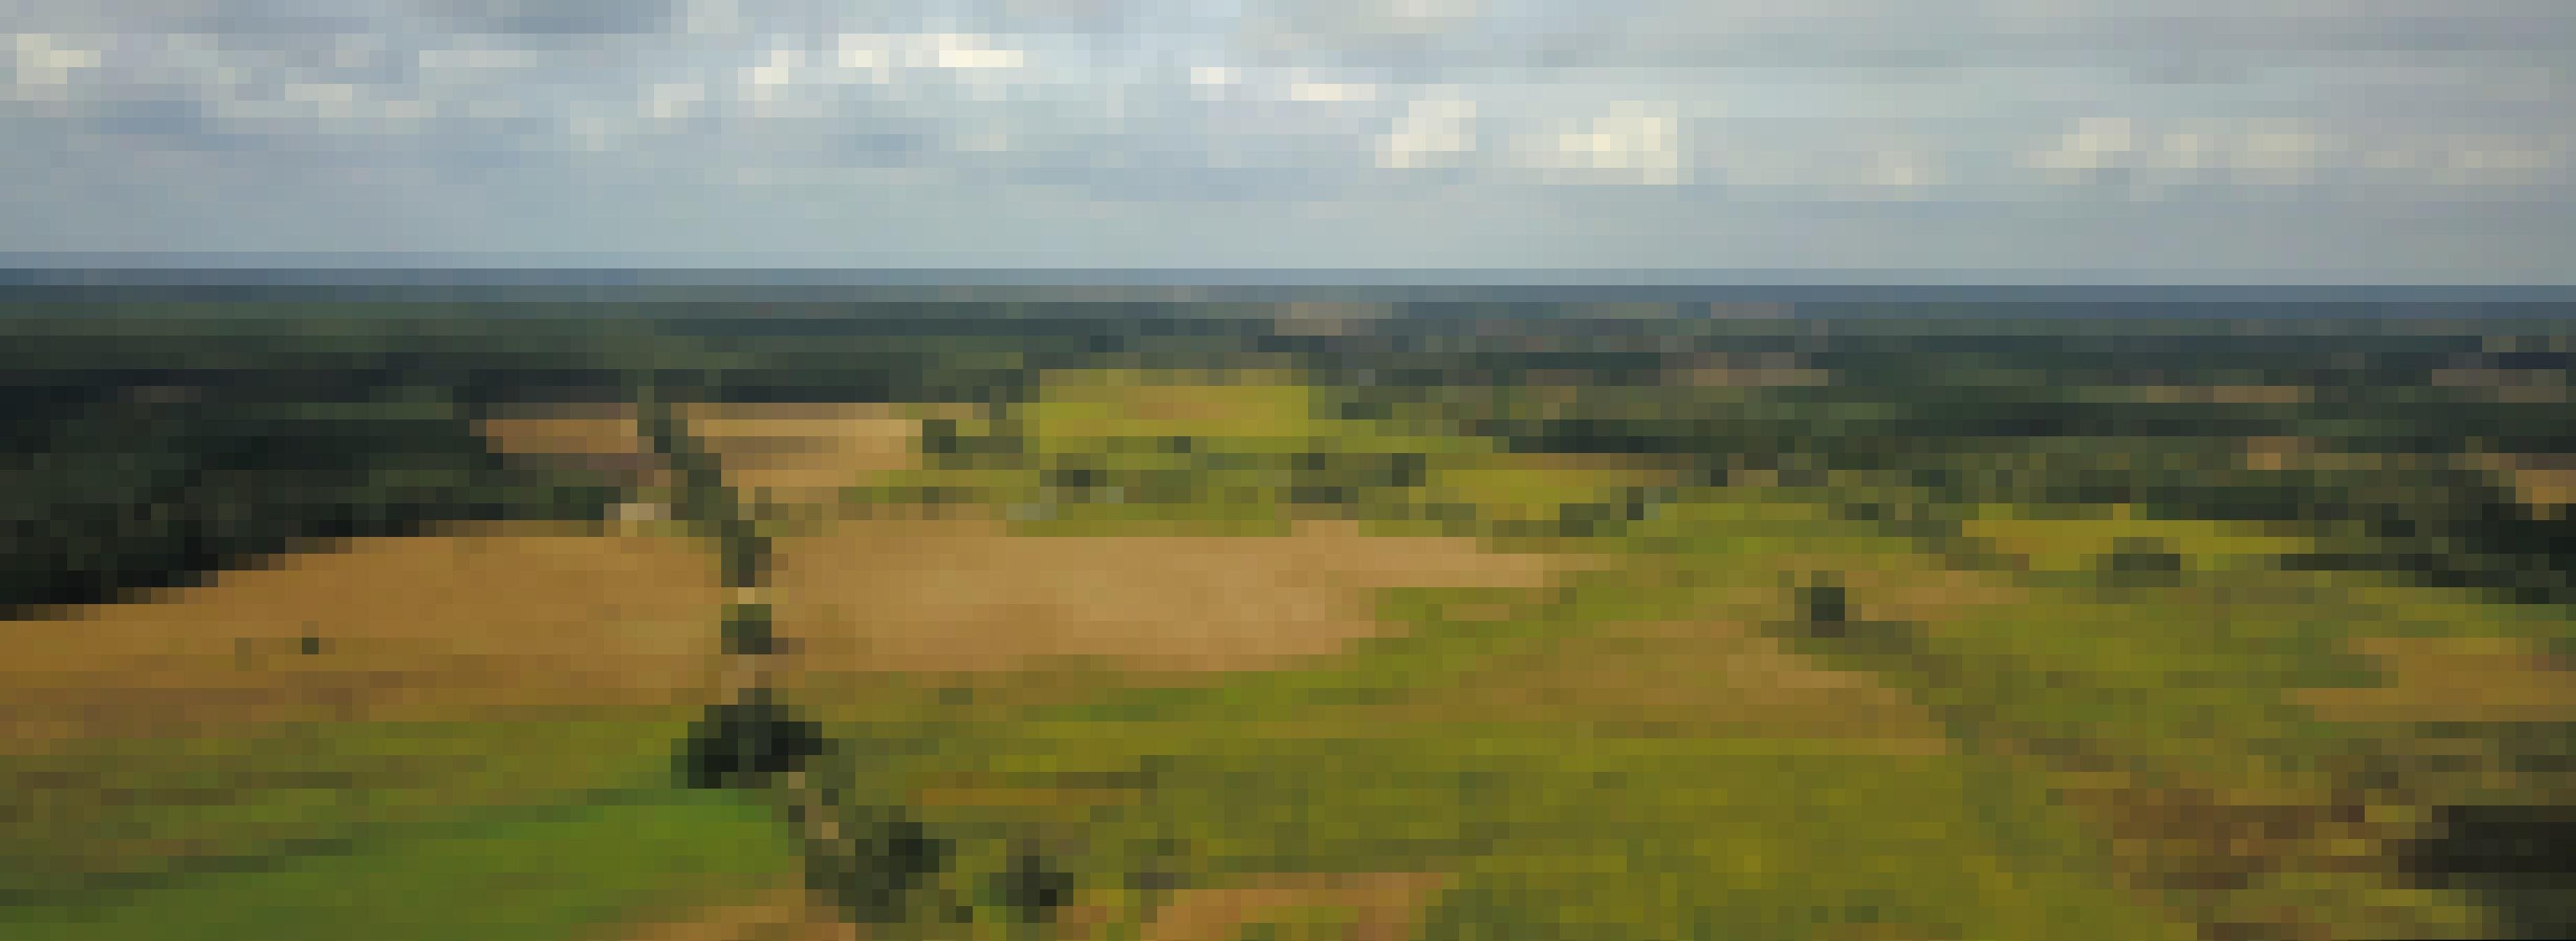 Luftbild einer Niedermoorlandschaft